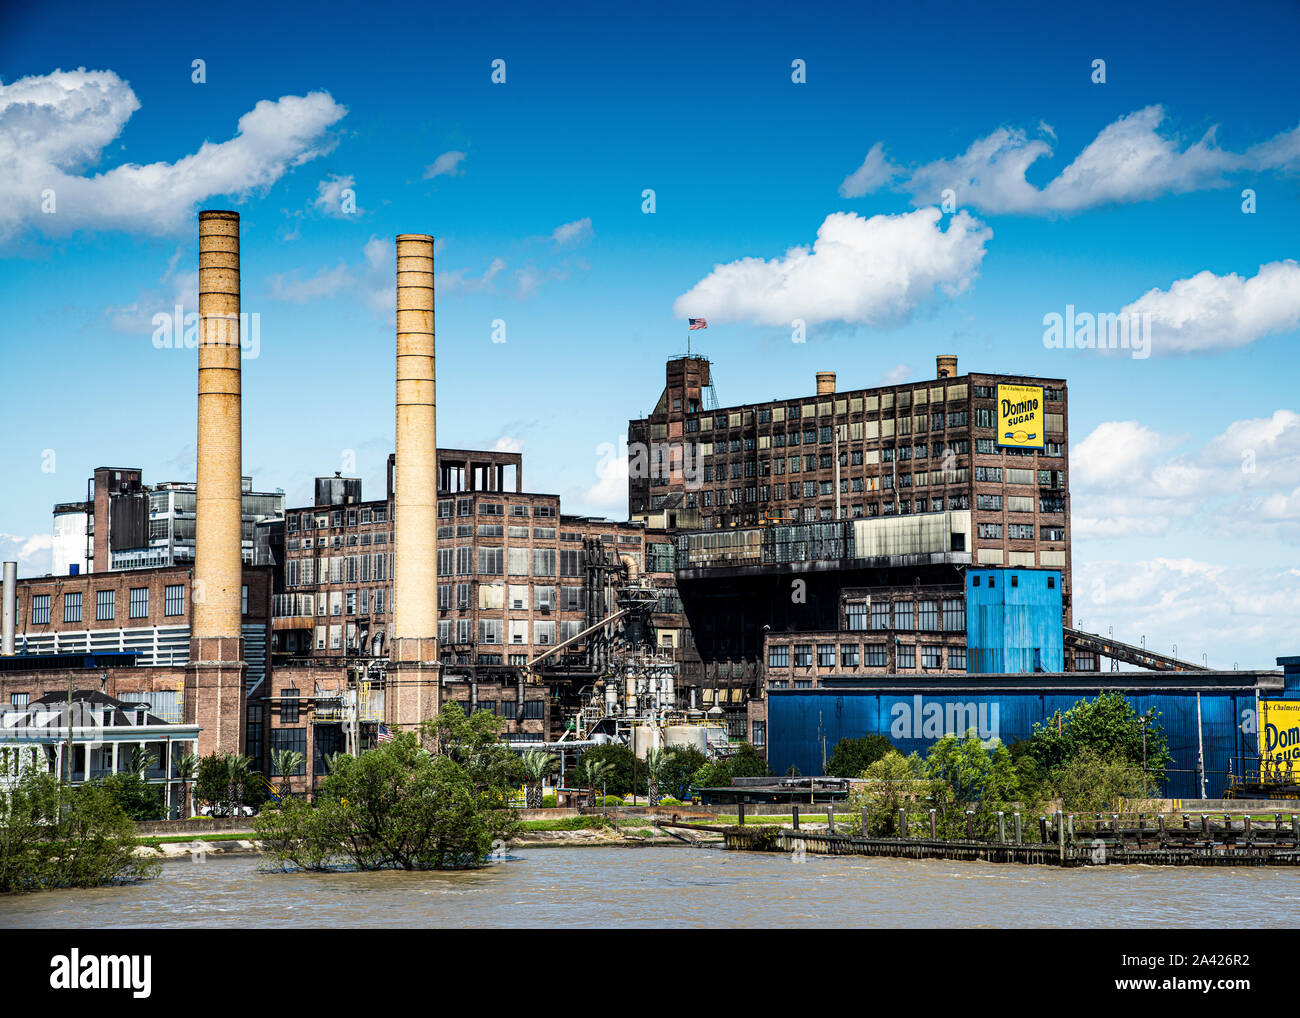 Herstellung seit über 100 Jahren die Chalmette Raffinerie von Domino Sugar auf dem Mississippi River etwas außerhalb von New Orleans, Louisiana. Stockfoto